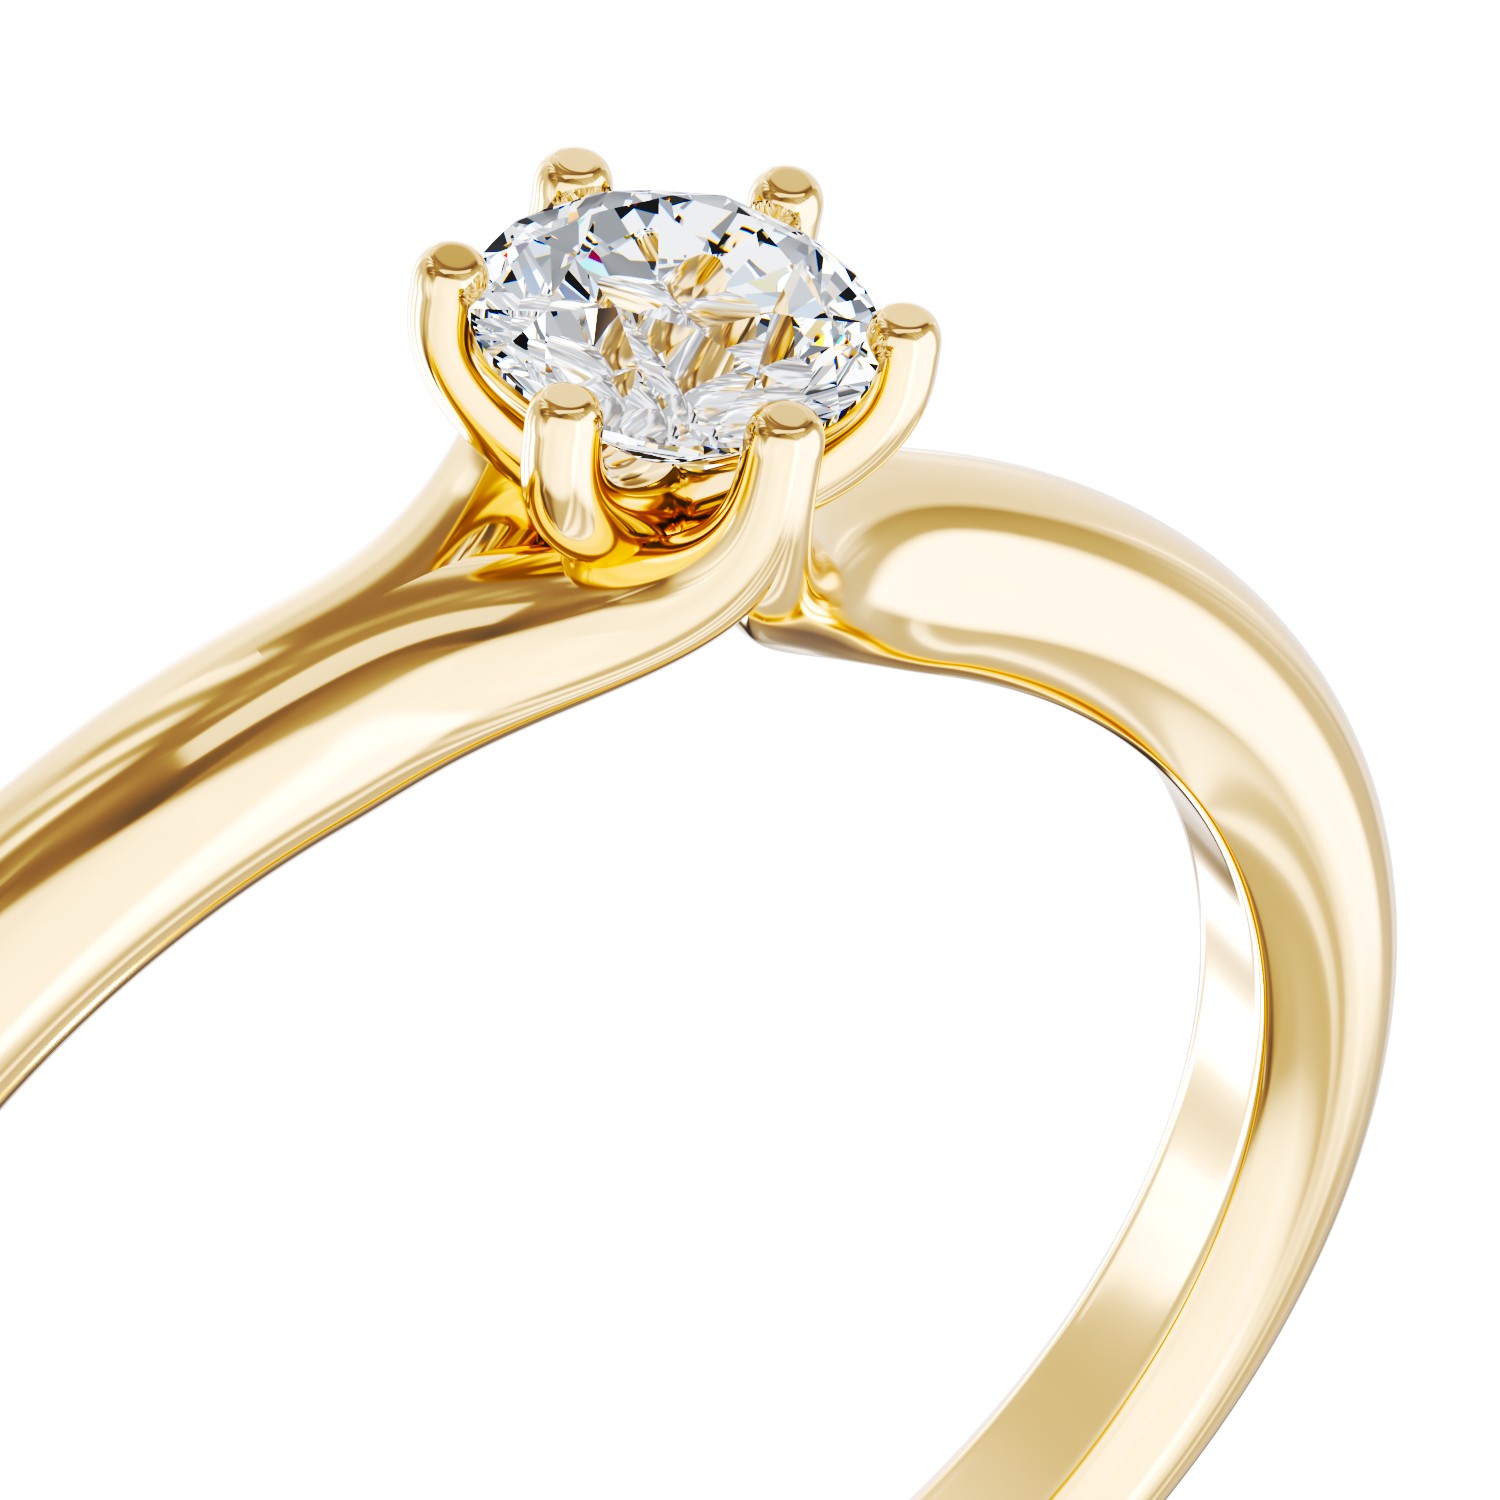 Eljegyzési gyűrű 18K-os sárga aranyból 0,31ct gyémánttal. Gramm: 2,1